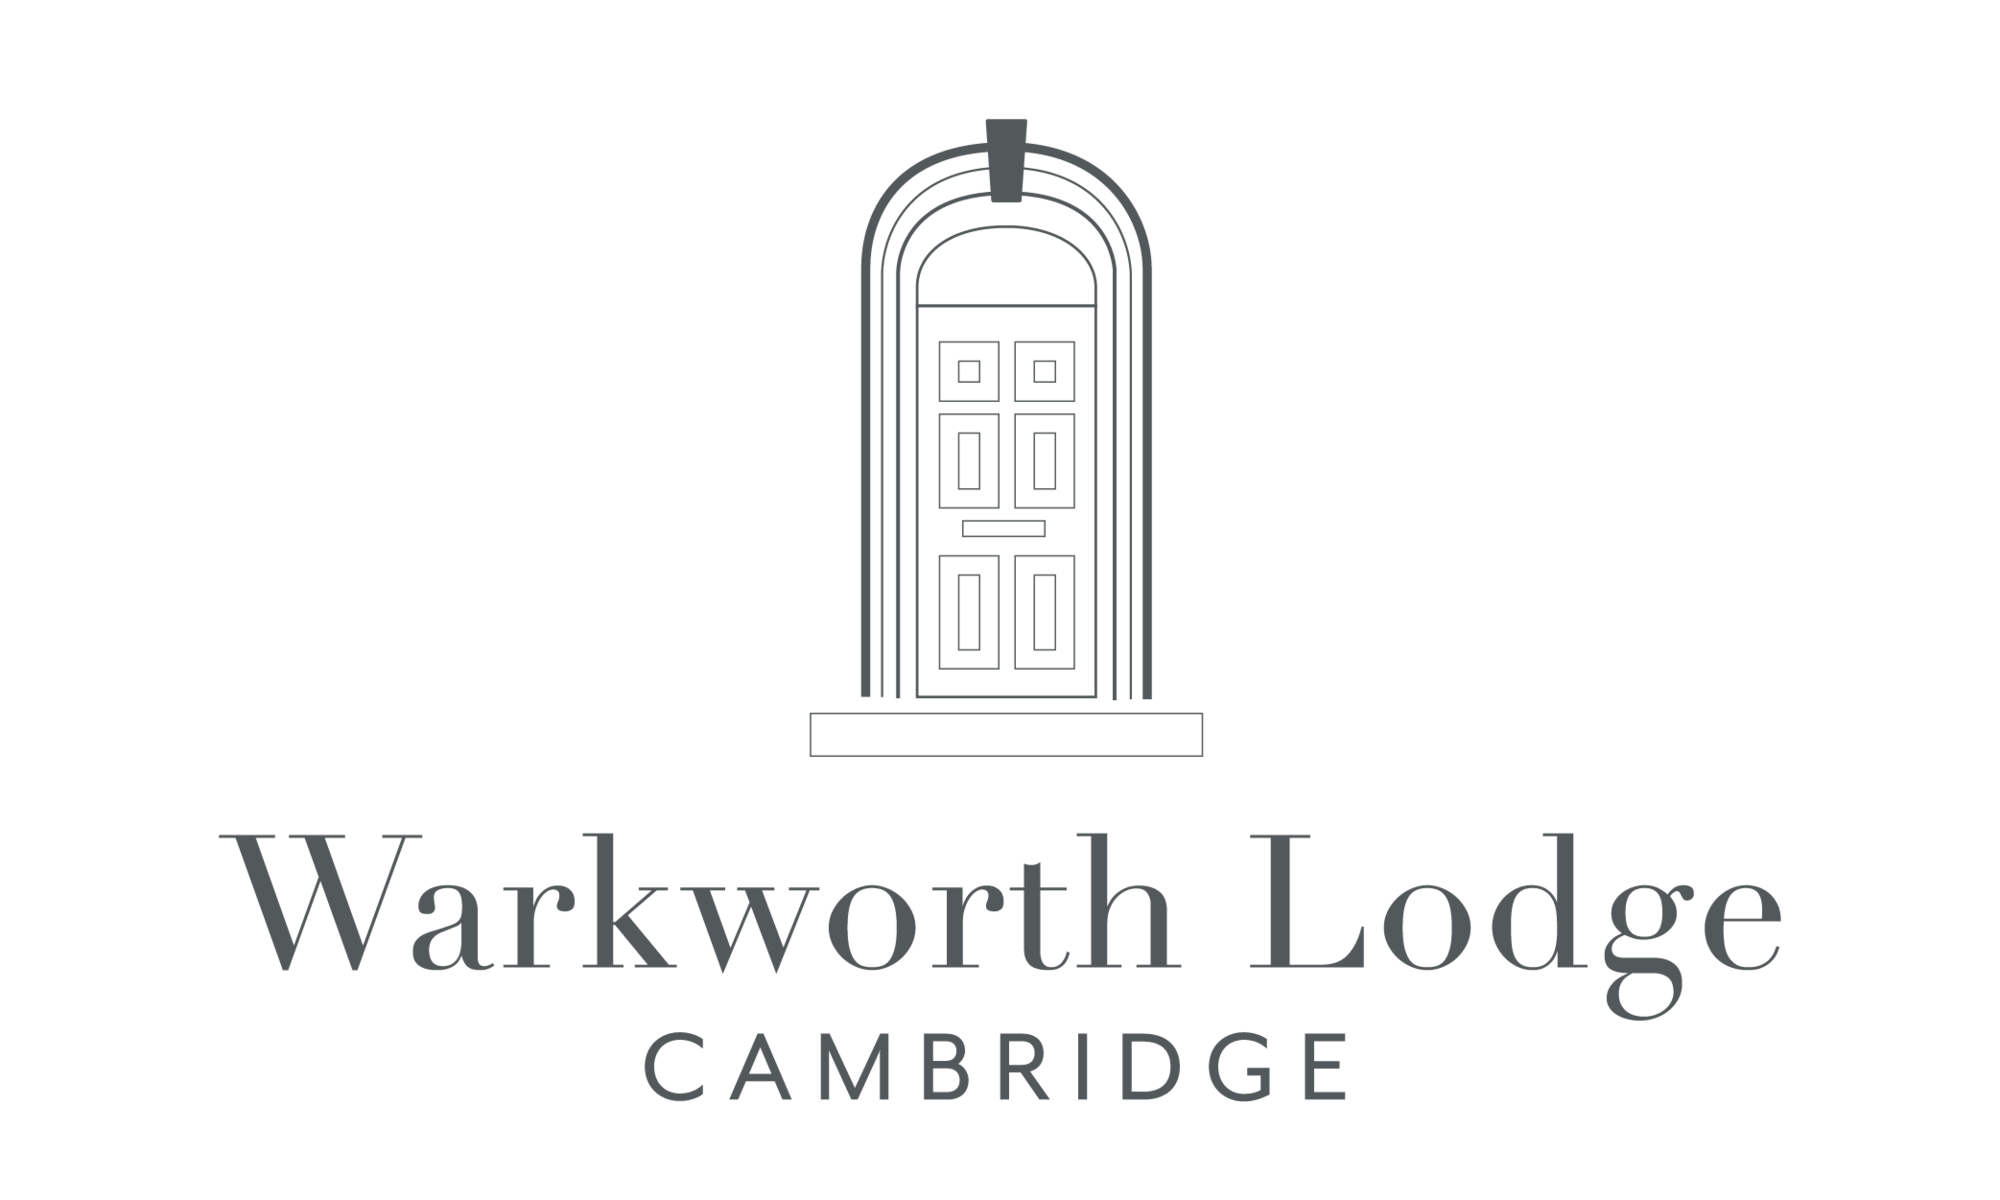 Warkworth Lodge